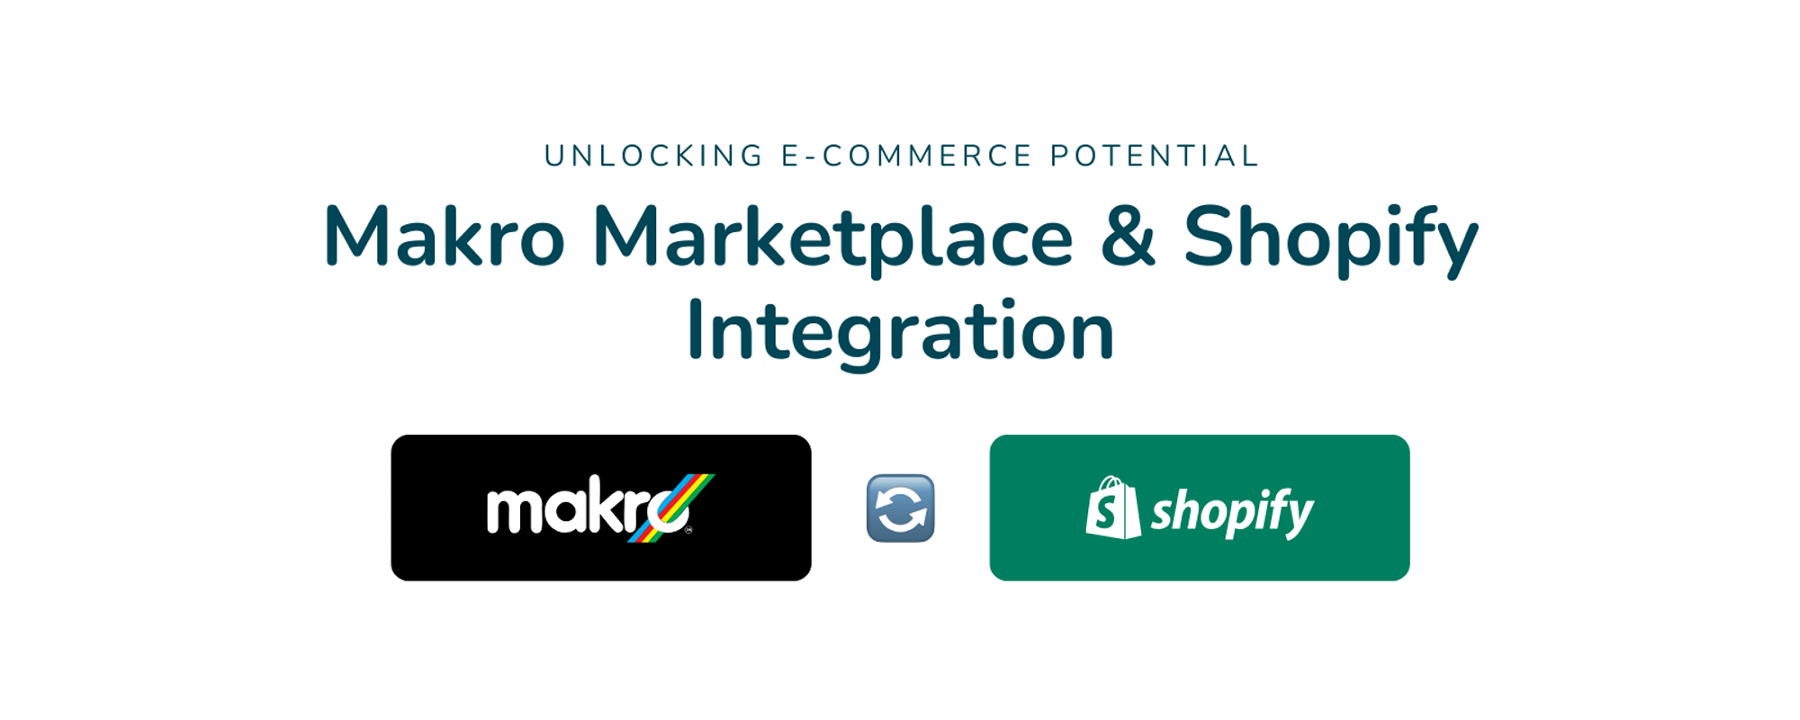 Makro Marketplace & Shopify Integration